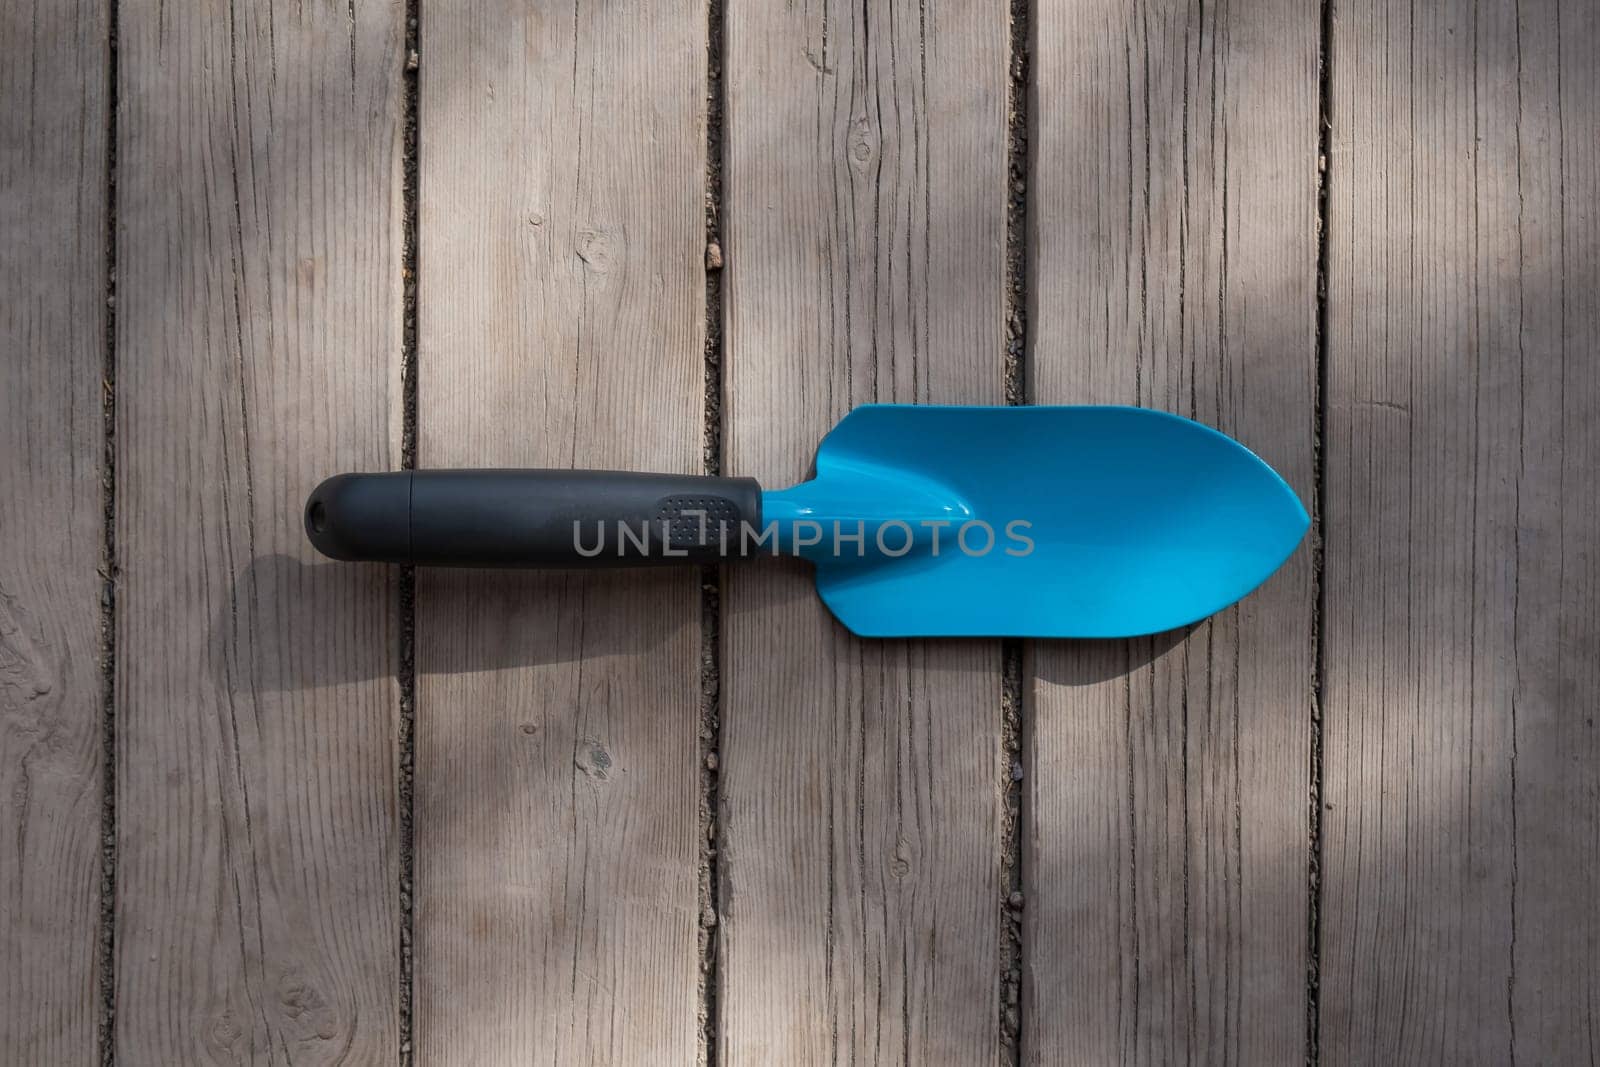 Small blue gardener's spatula on the wooden floor.